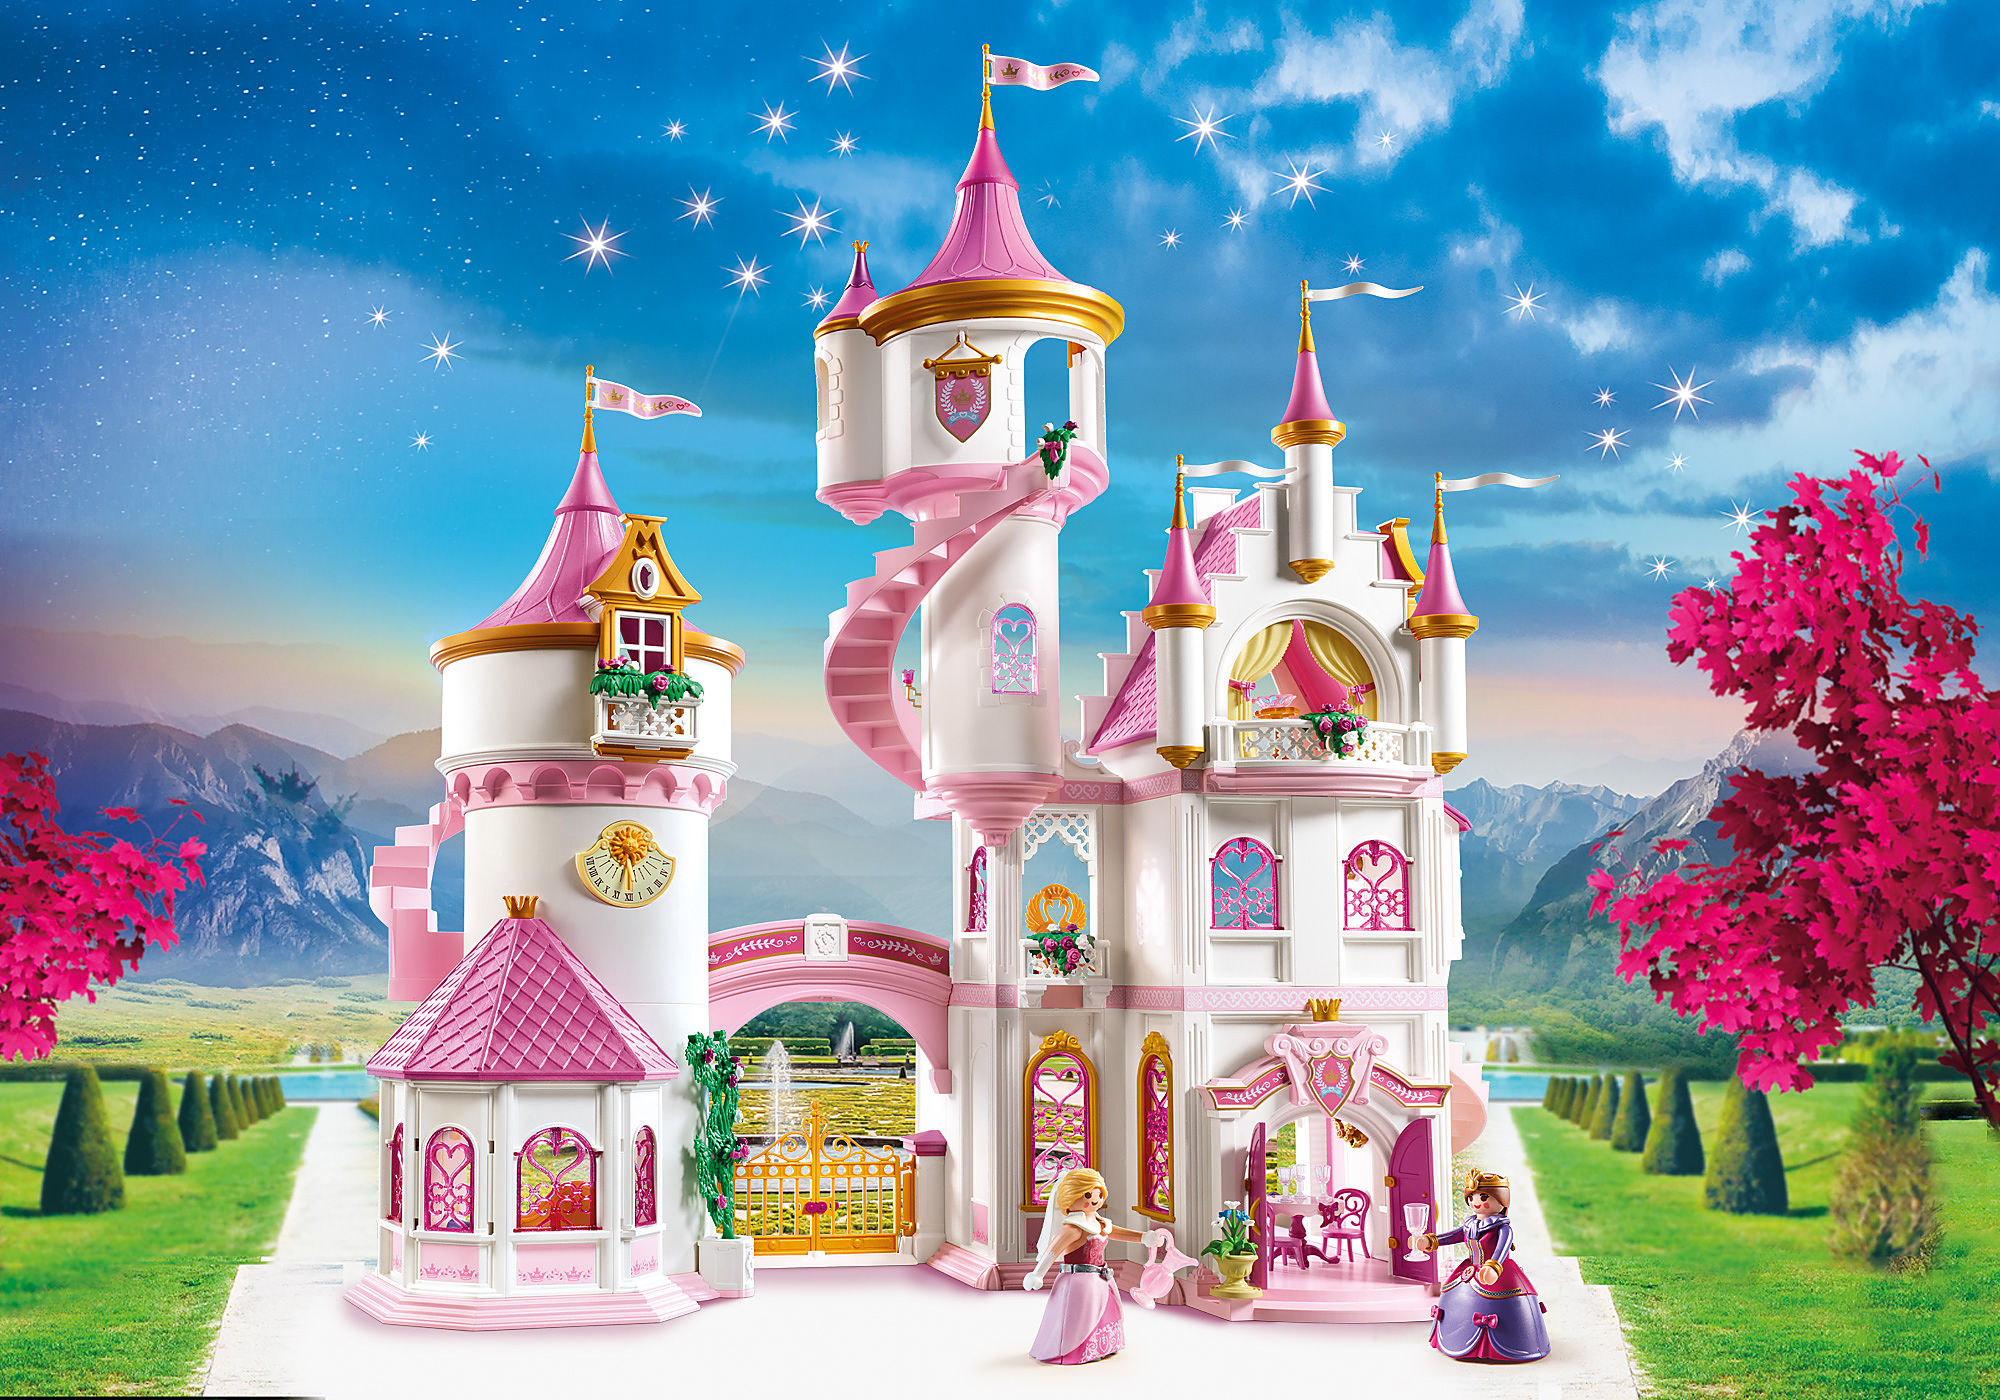 71169 - Playmobil Spécial Plus - Prince et déguisement Playmobil : King  Jouet, Playmobil Playmobil - Jeux d'imitation & Mondes imaginaires